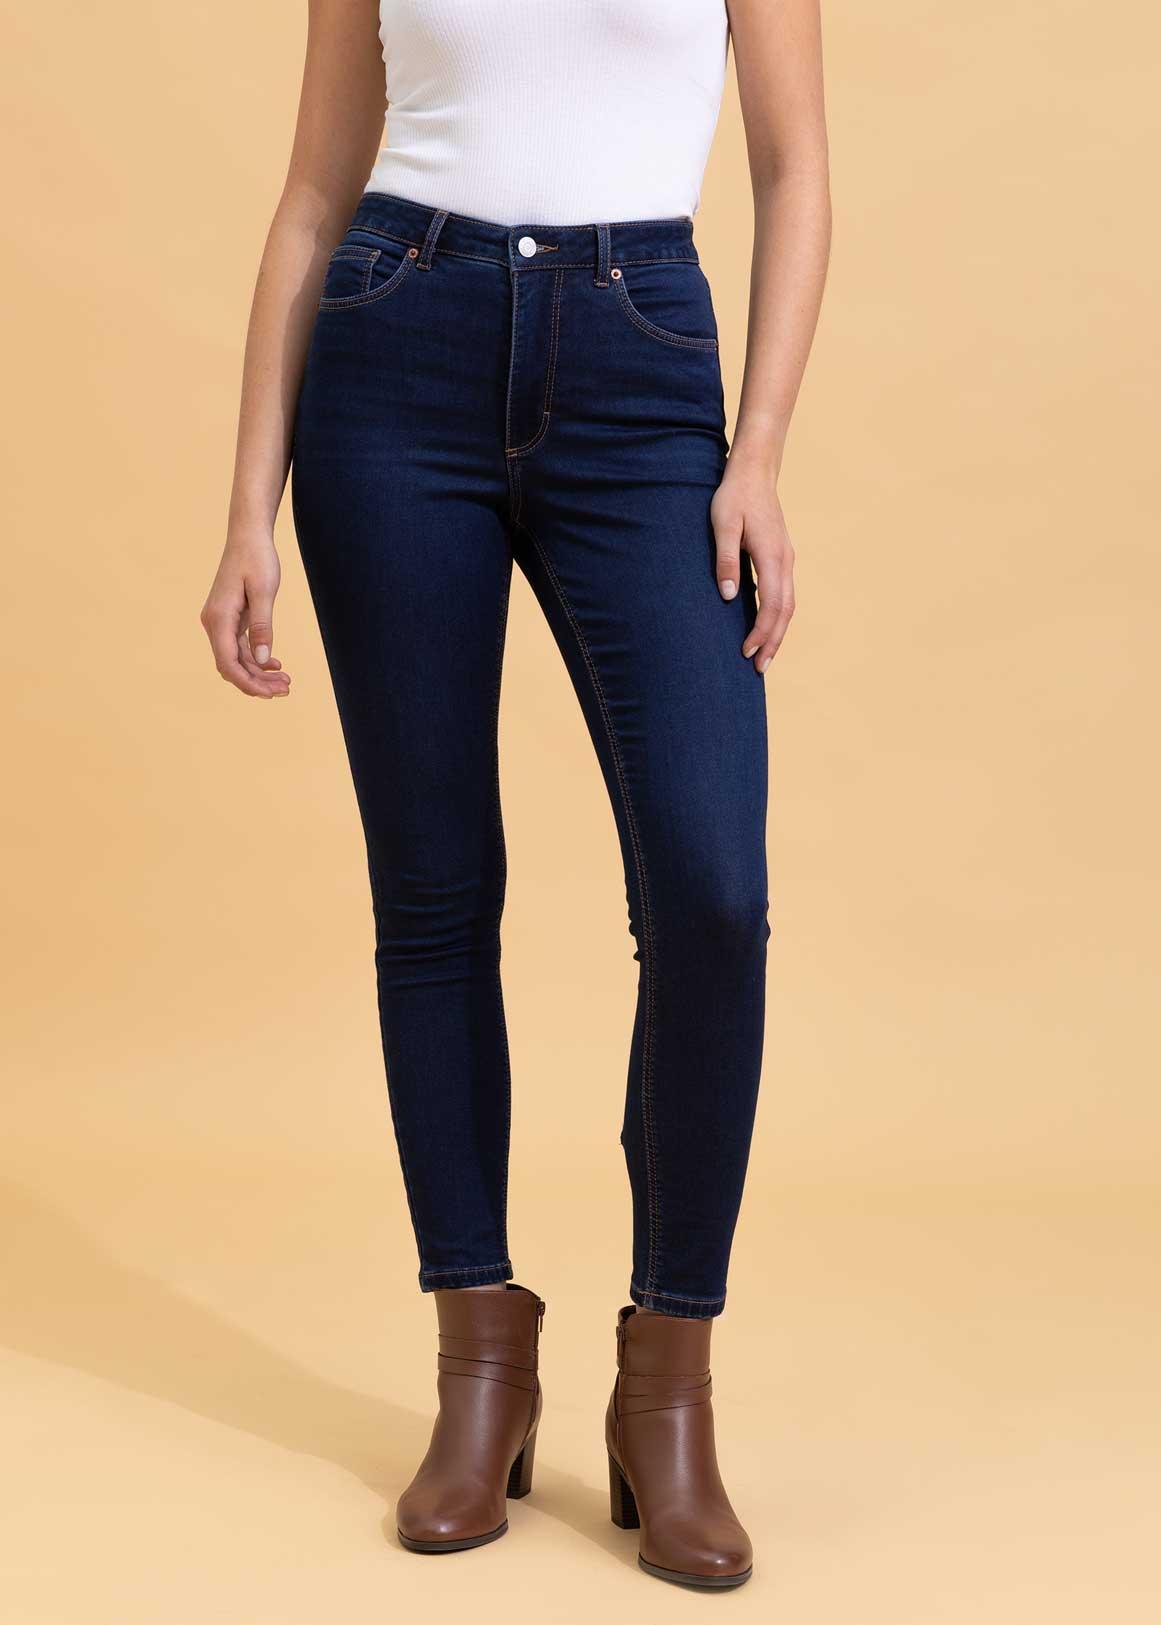 Bulk-buy Womens Skinny Soft Jeans High Waist Denim Leggings